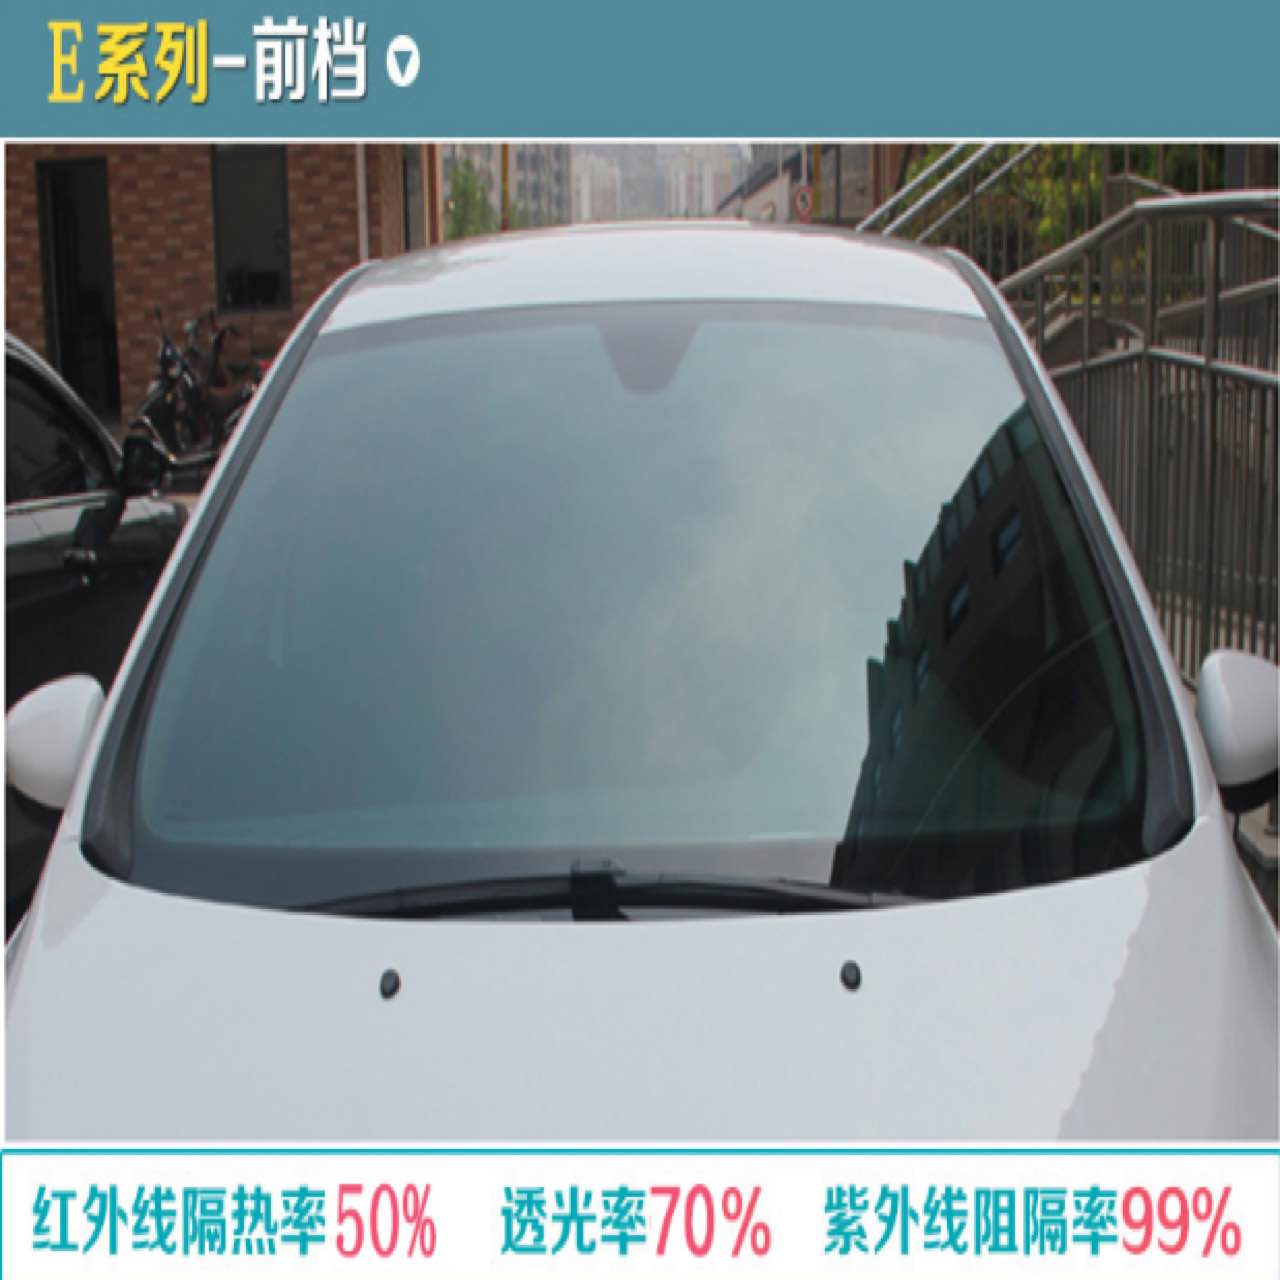 正品beitefu汽车贴膜 全车膜 车窗玻璃贴膜隔热防爆金属膜